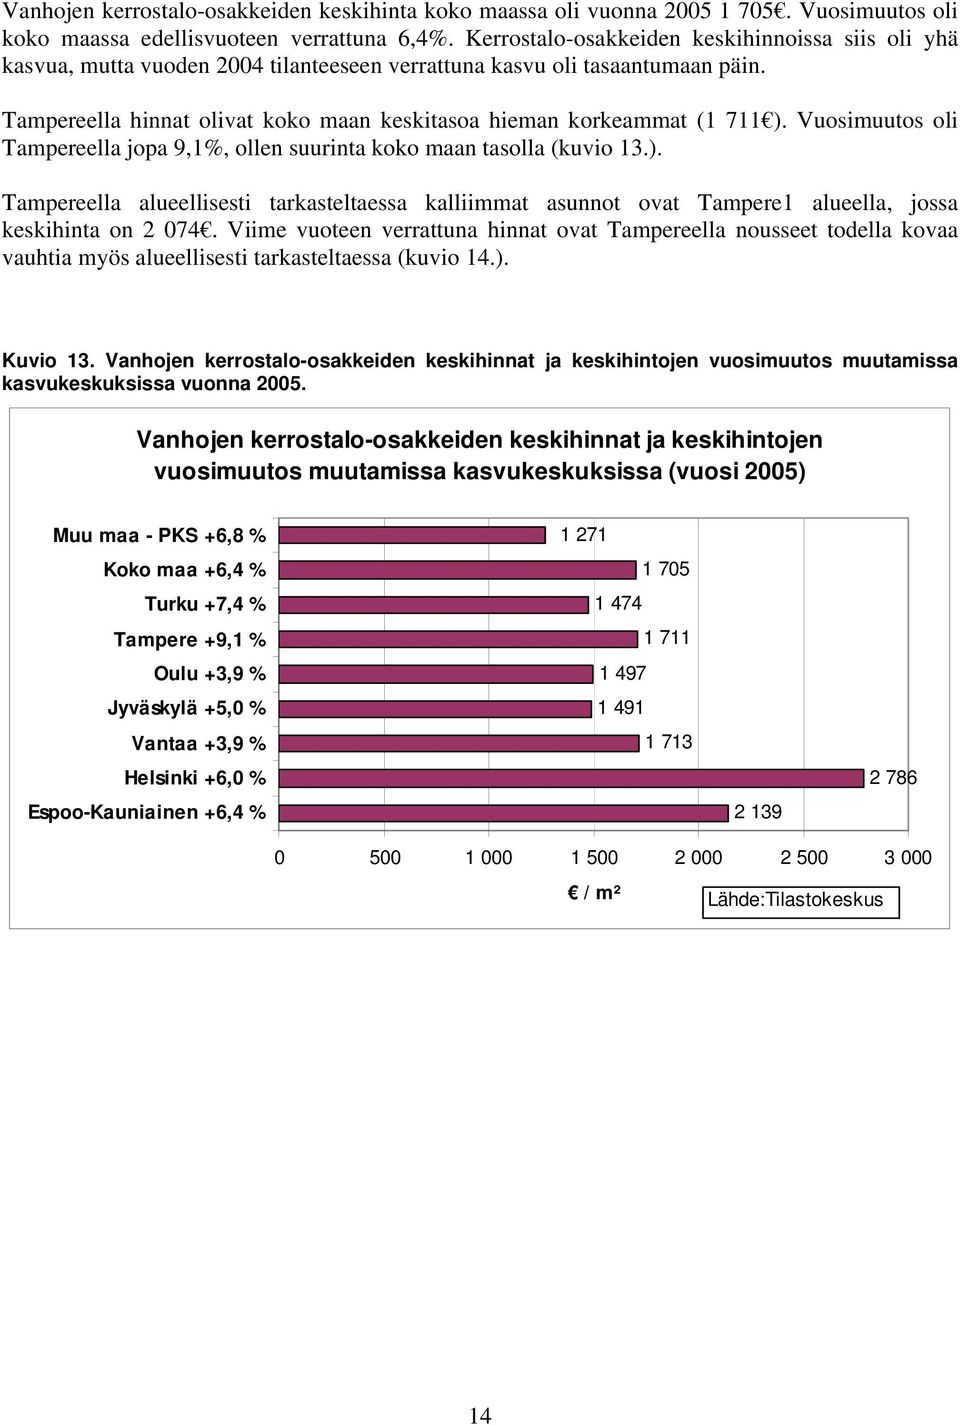 Tampereella hinnat olivat koko maan keskitasoa hieman korkeammat (1 711 ). Vuosimuutos oli Tampereella jopa 9,1%, ollen suurinta koko maan tasolla (kuvio 13.). Tampereella alueellisesti tarkasteltaessa kalliimmat asunnot ovat Tampere1 alueella, jossa keskihinta on 2 074.